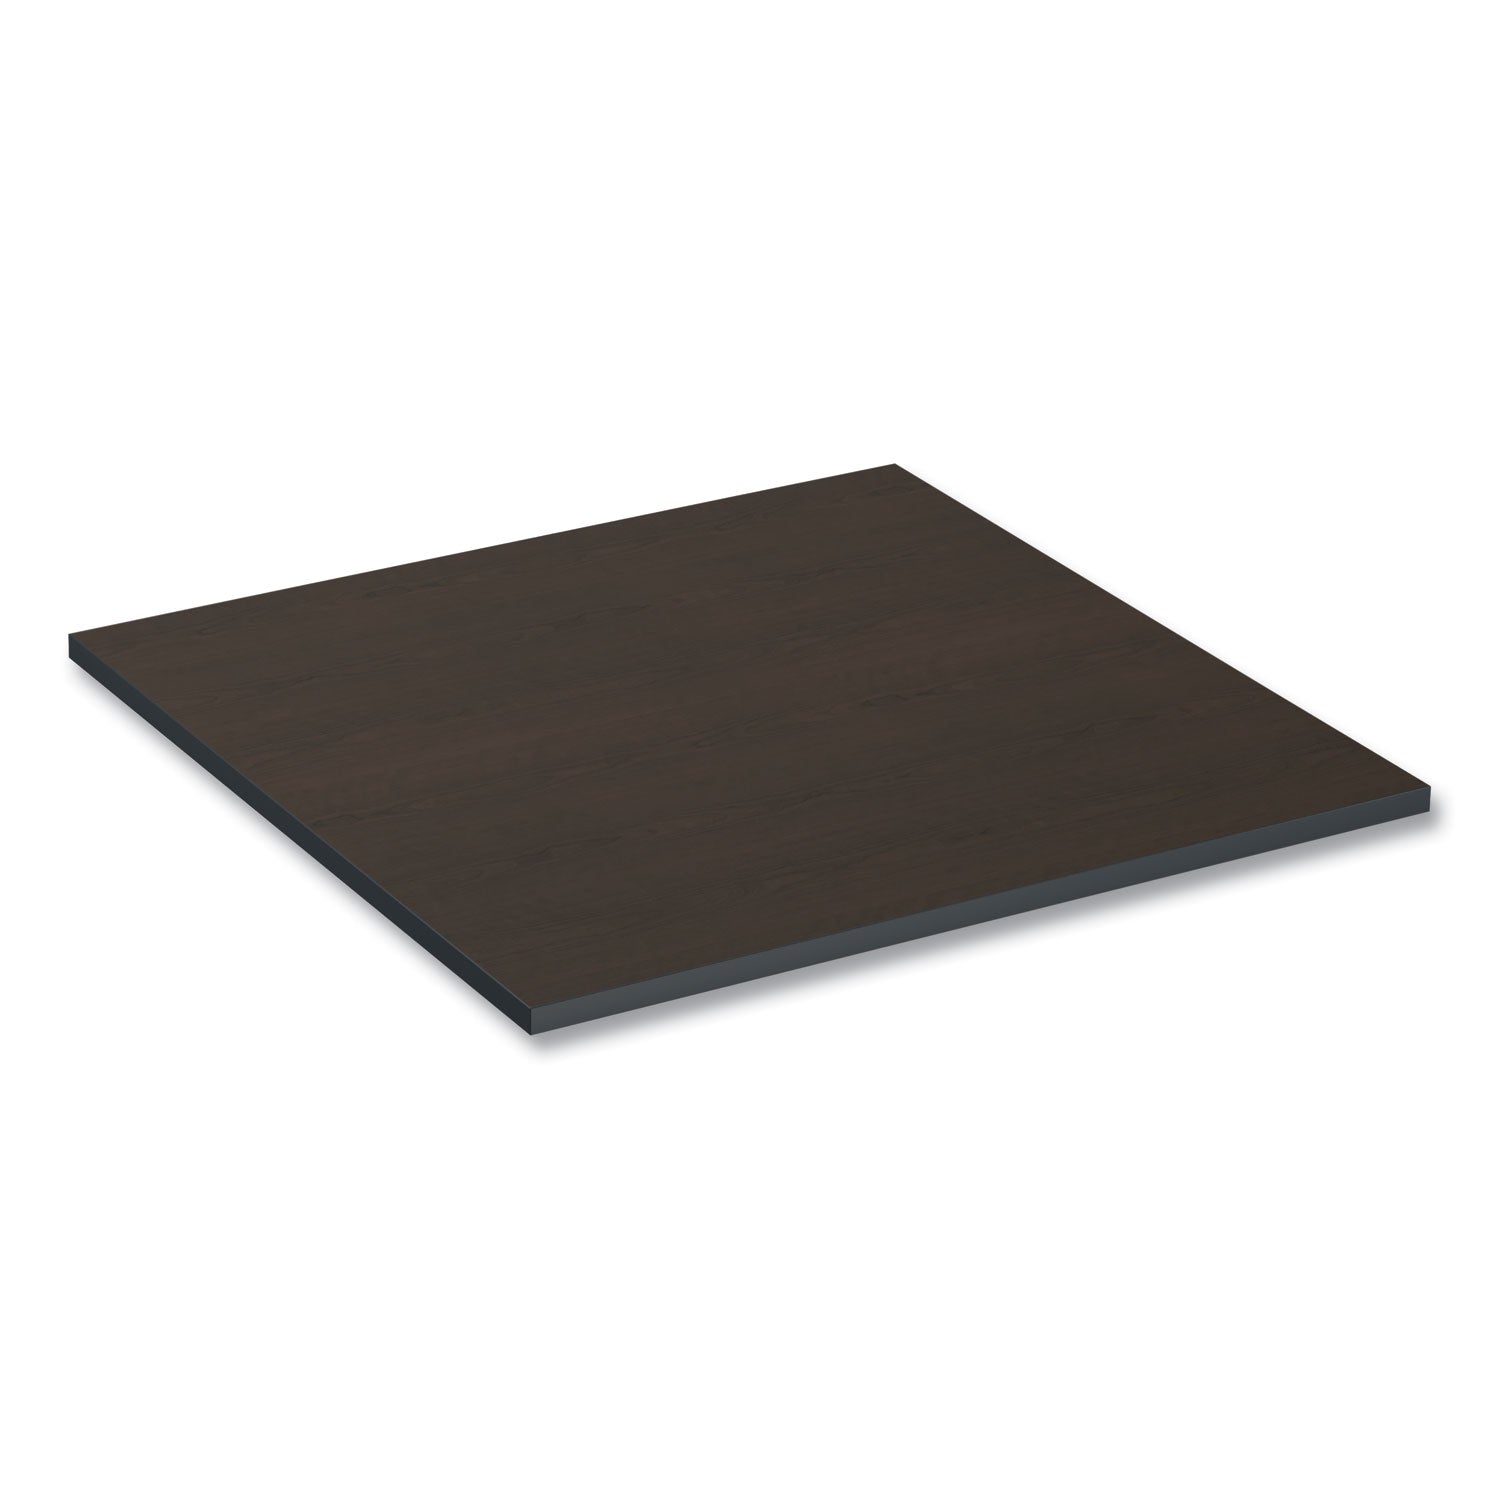 reversible-laminate-table-top-square-3538w-x-3538d-espresso-walnut_alettsq36ew - 7